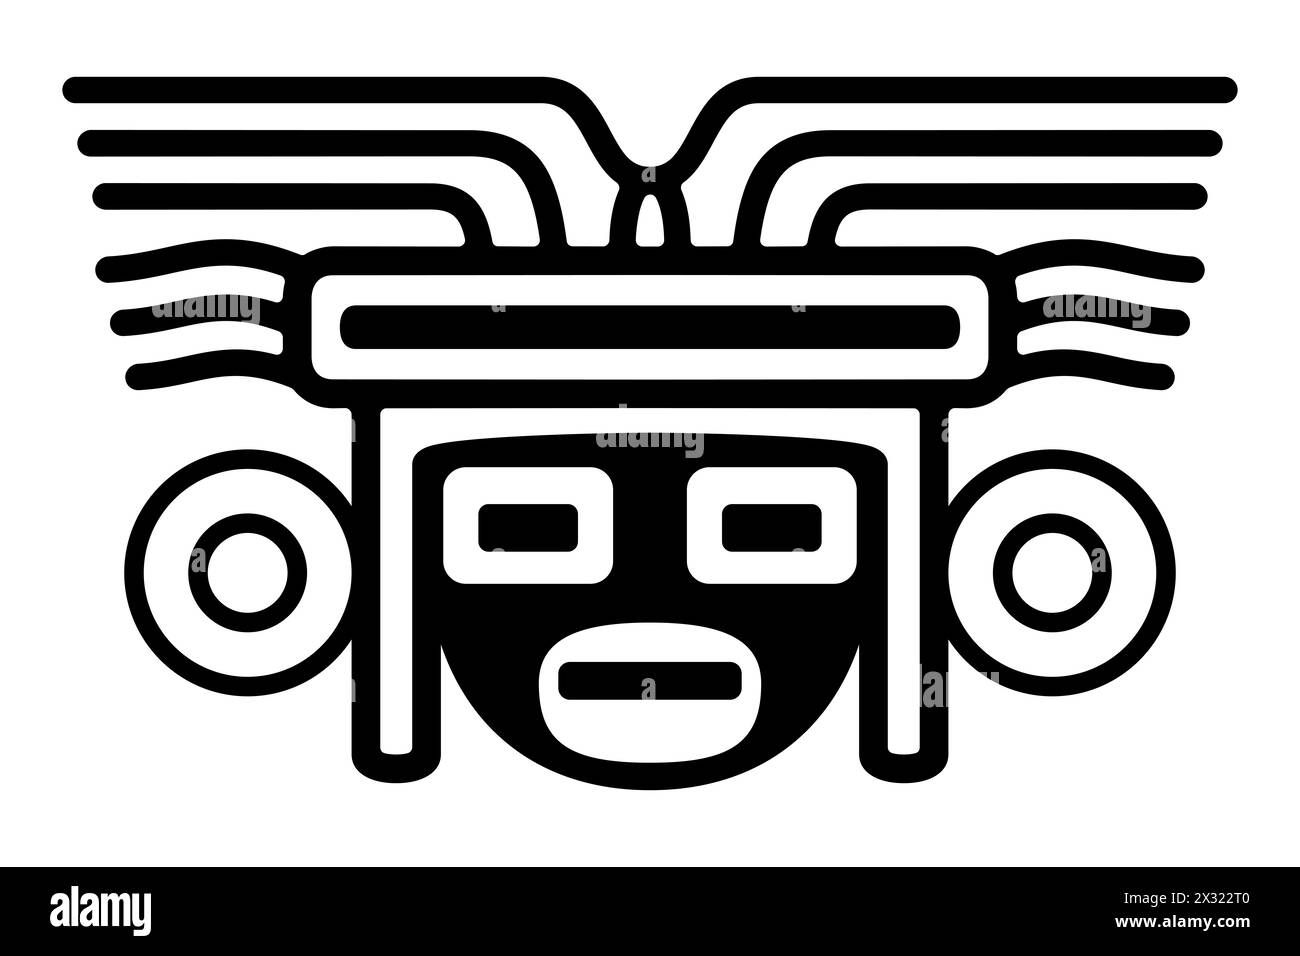 Kopf mit Maske großer Kopfschmuck, ein altes mexikanisches Motiv. Präkolumbisches, aztekisches flaches Tonstempelmotiv, gefunden in Tenochtitlan, dem Zentrum von Mexiko-Stadt. Stockfoto